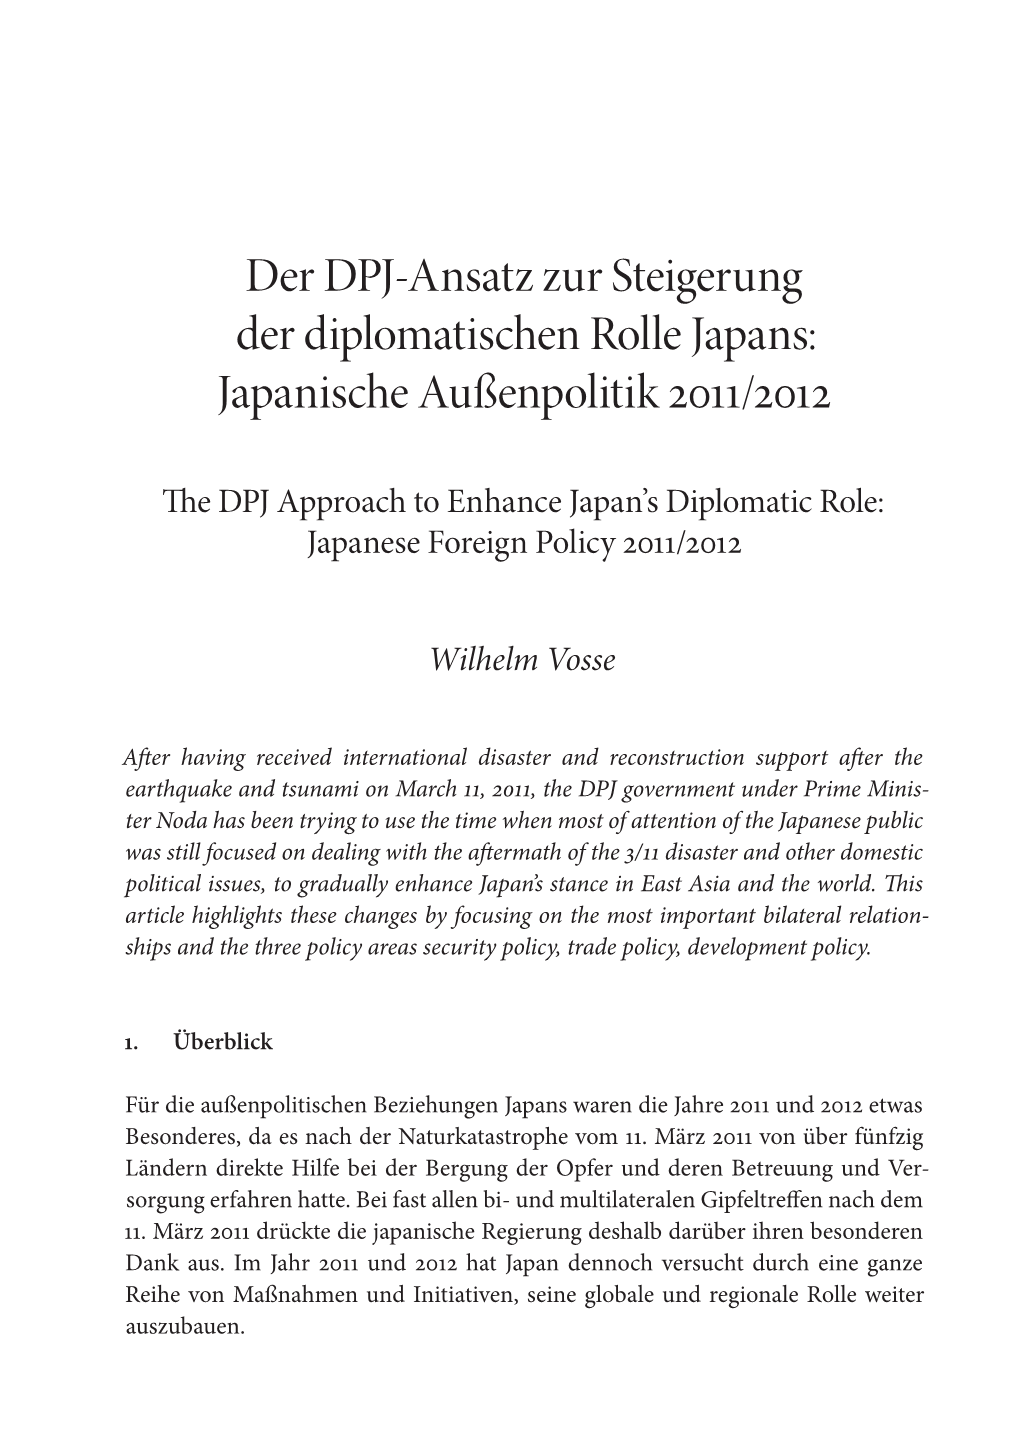 Japanische Außenpolitik 2011/2012